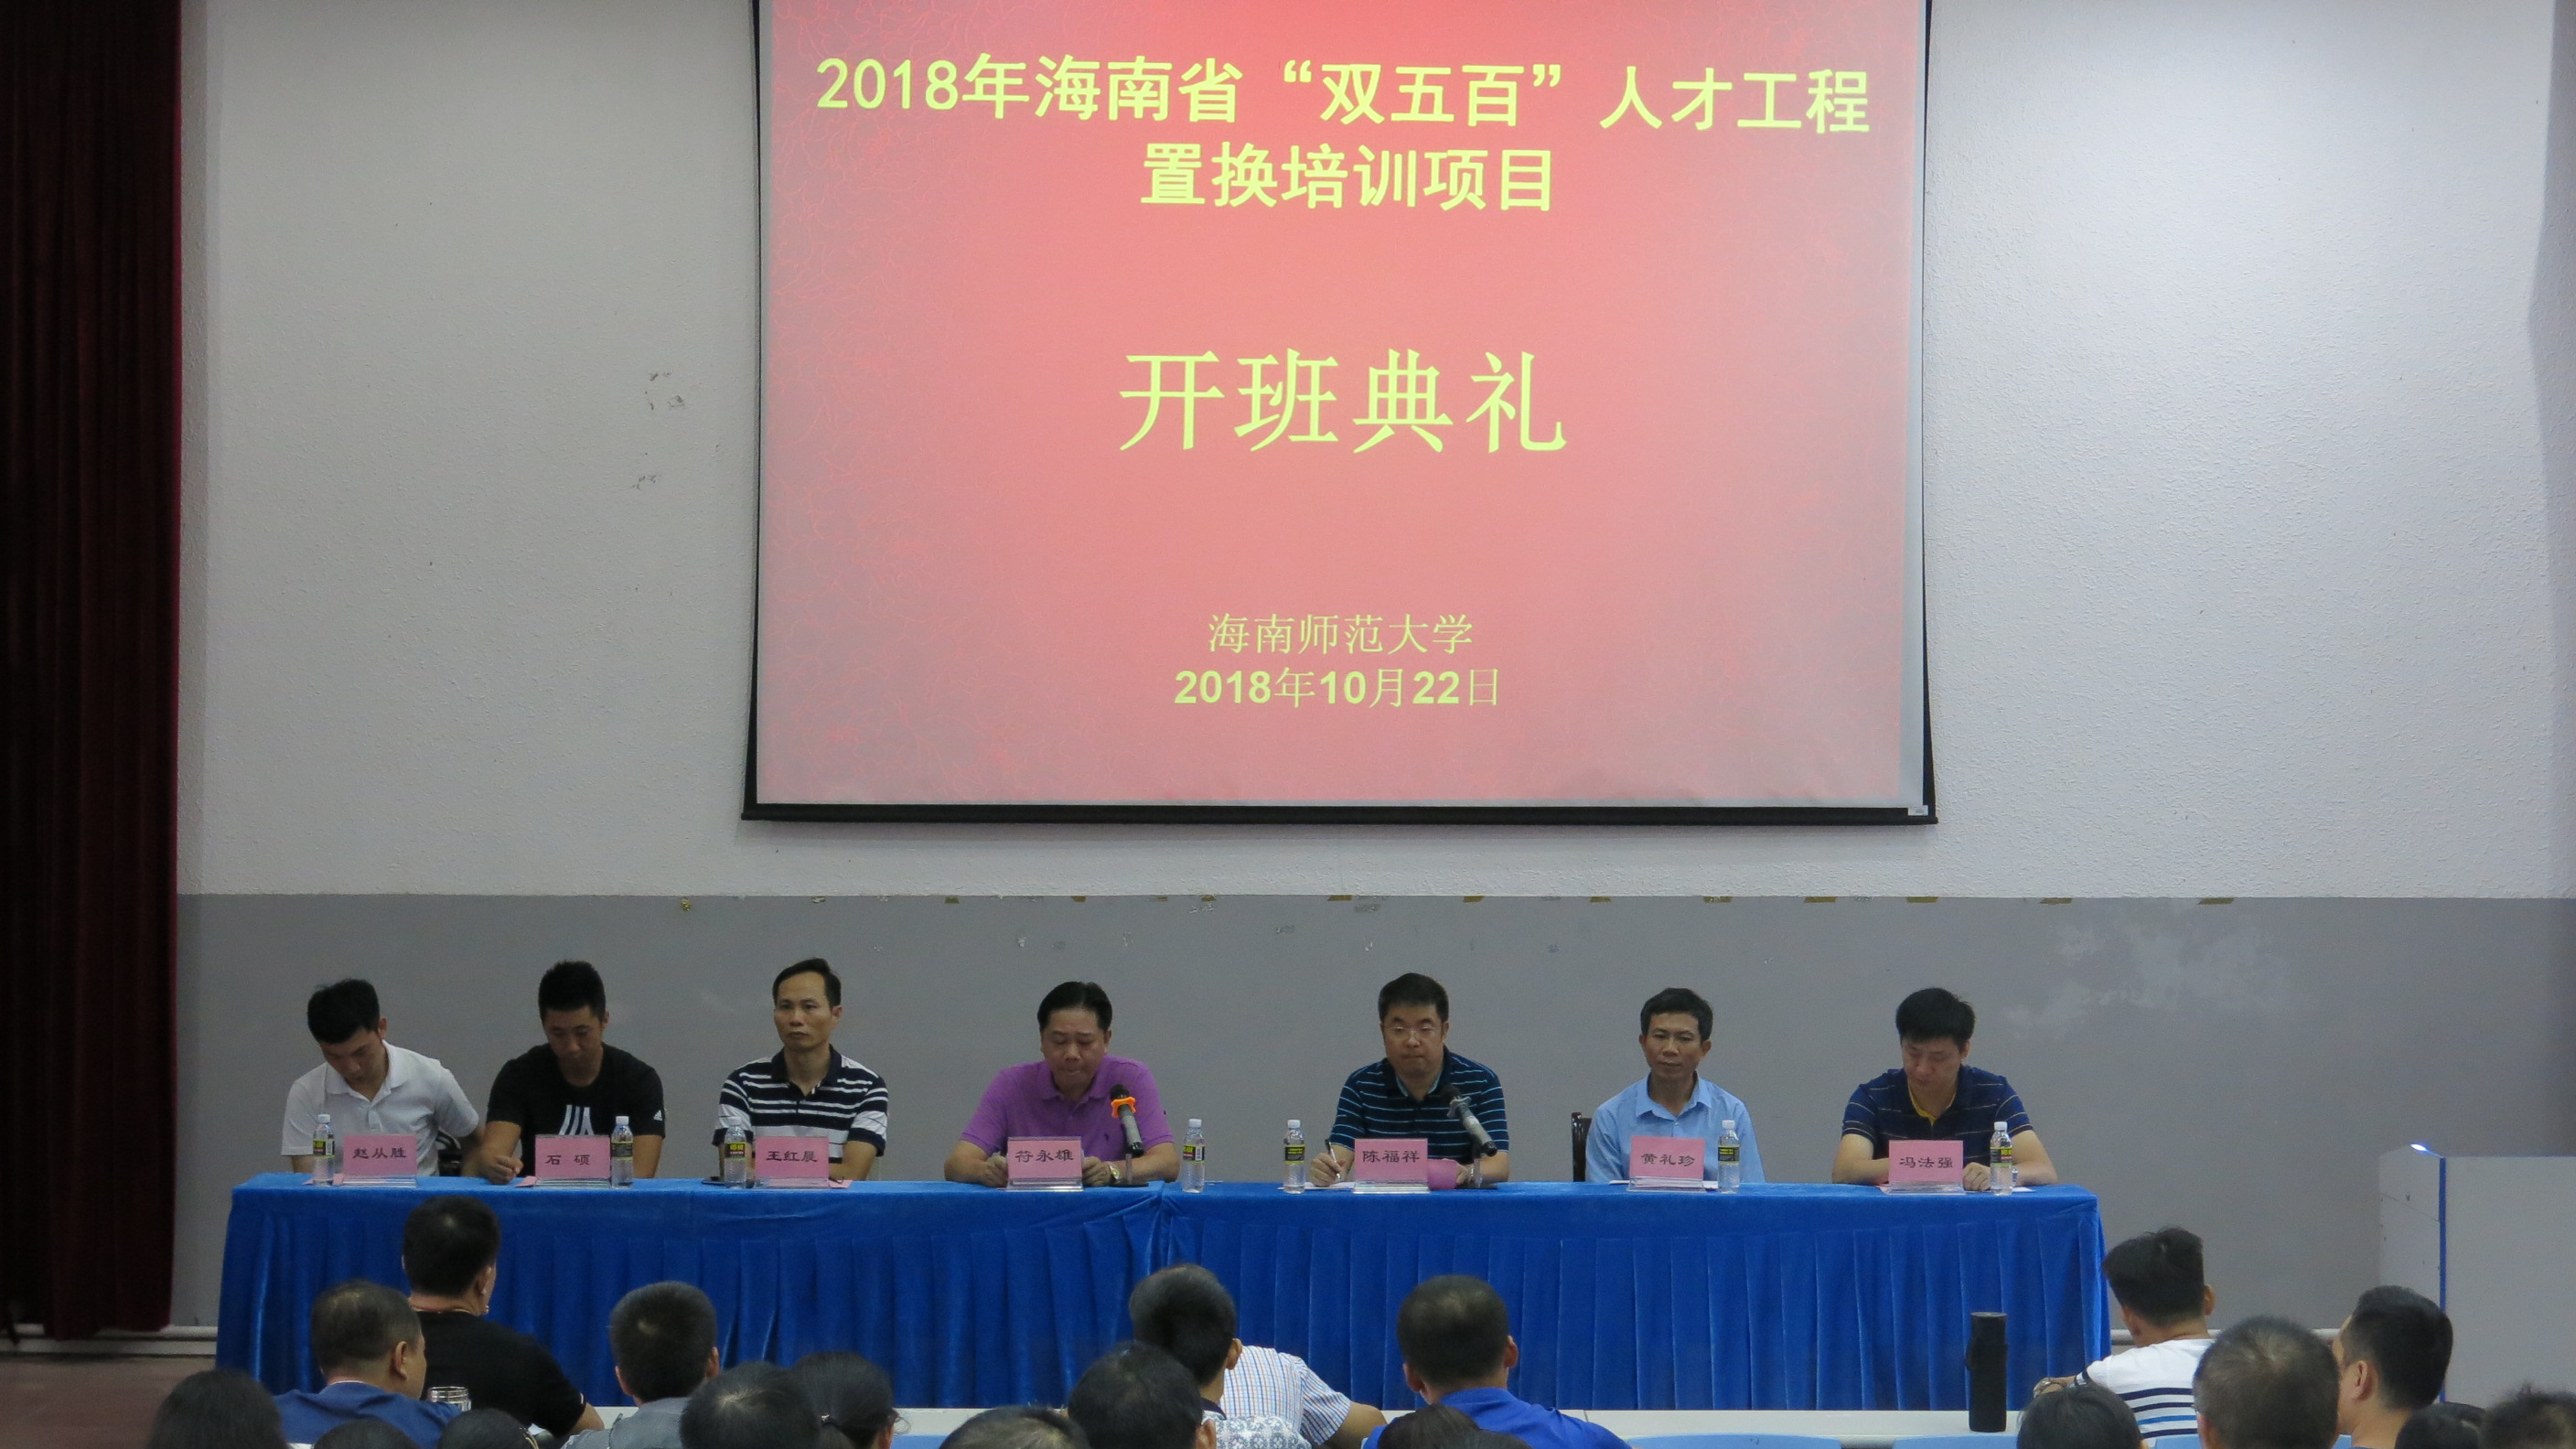 我校舉行2018年海南省“雙五百”人才工程置換培訓項目開班典禮